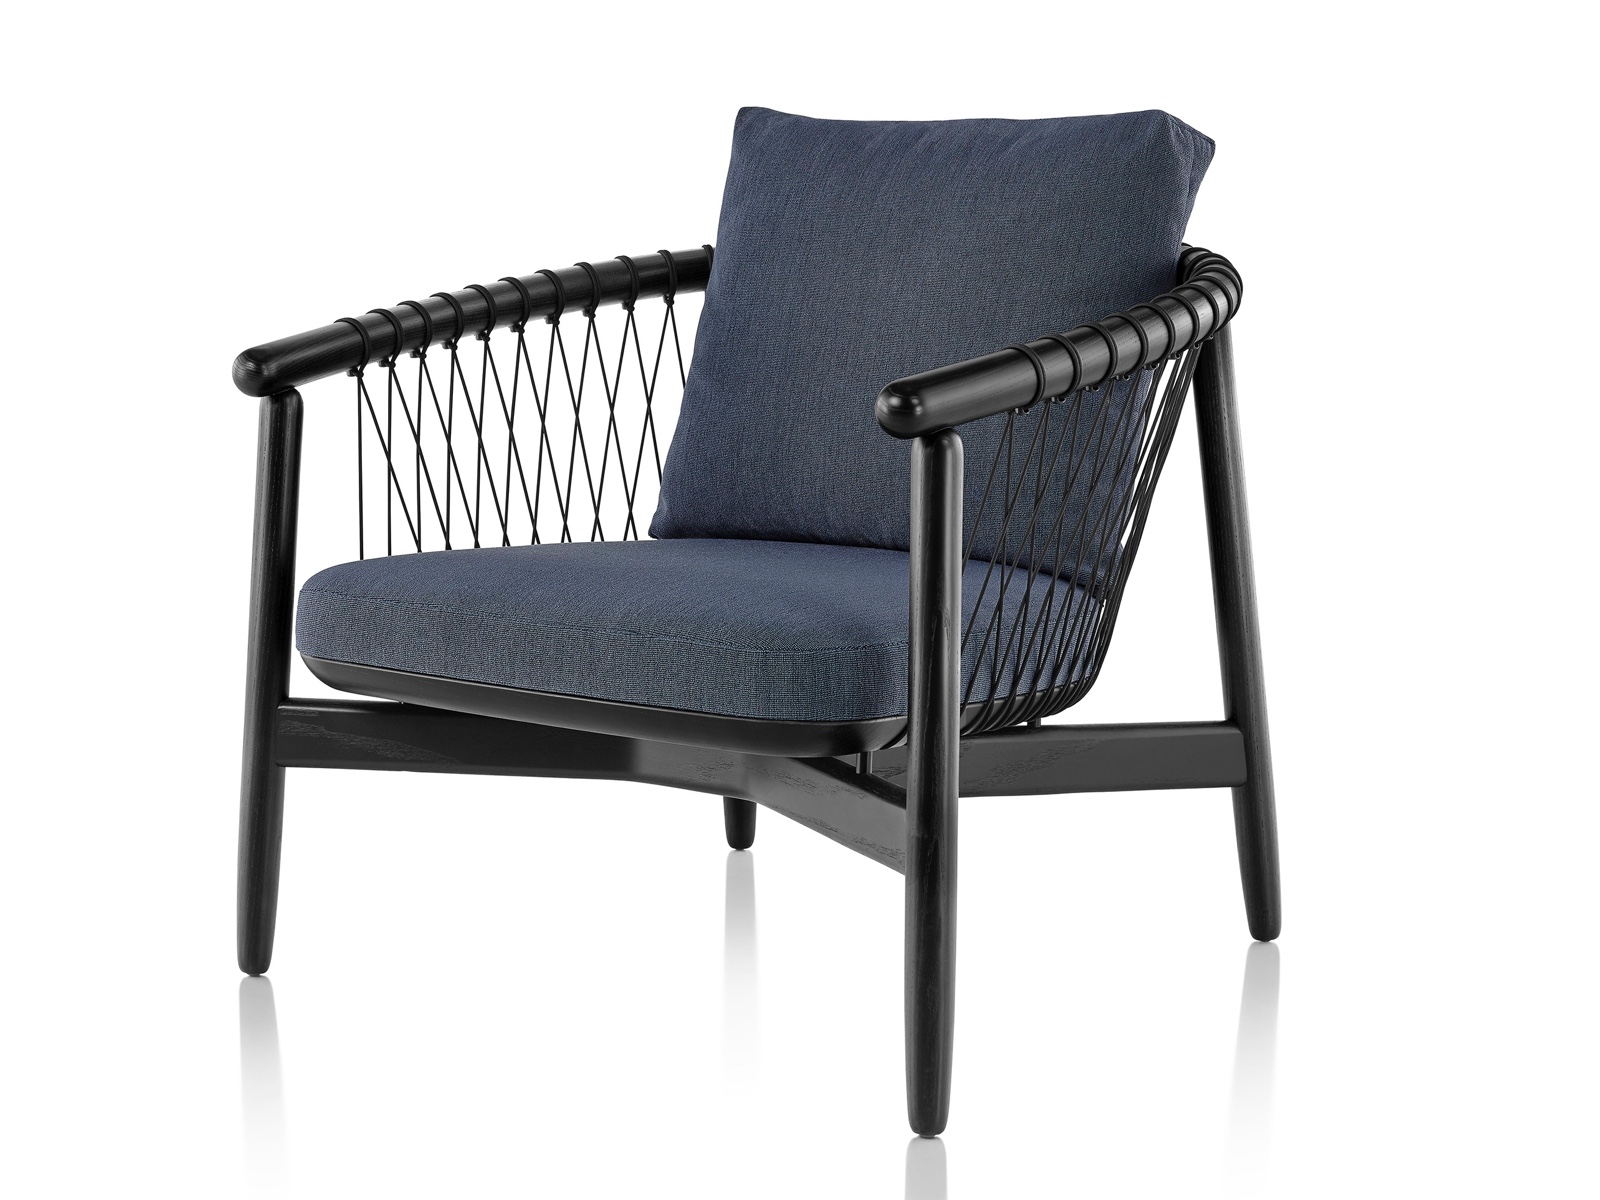 Azul marinho estofados Crosshatch cadeira com moldura de madeira preta, vista de frente em um ângulo.